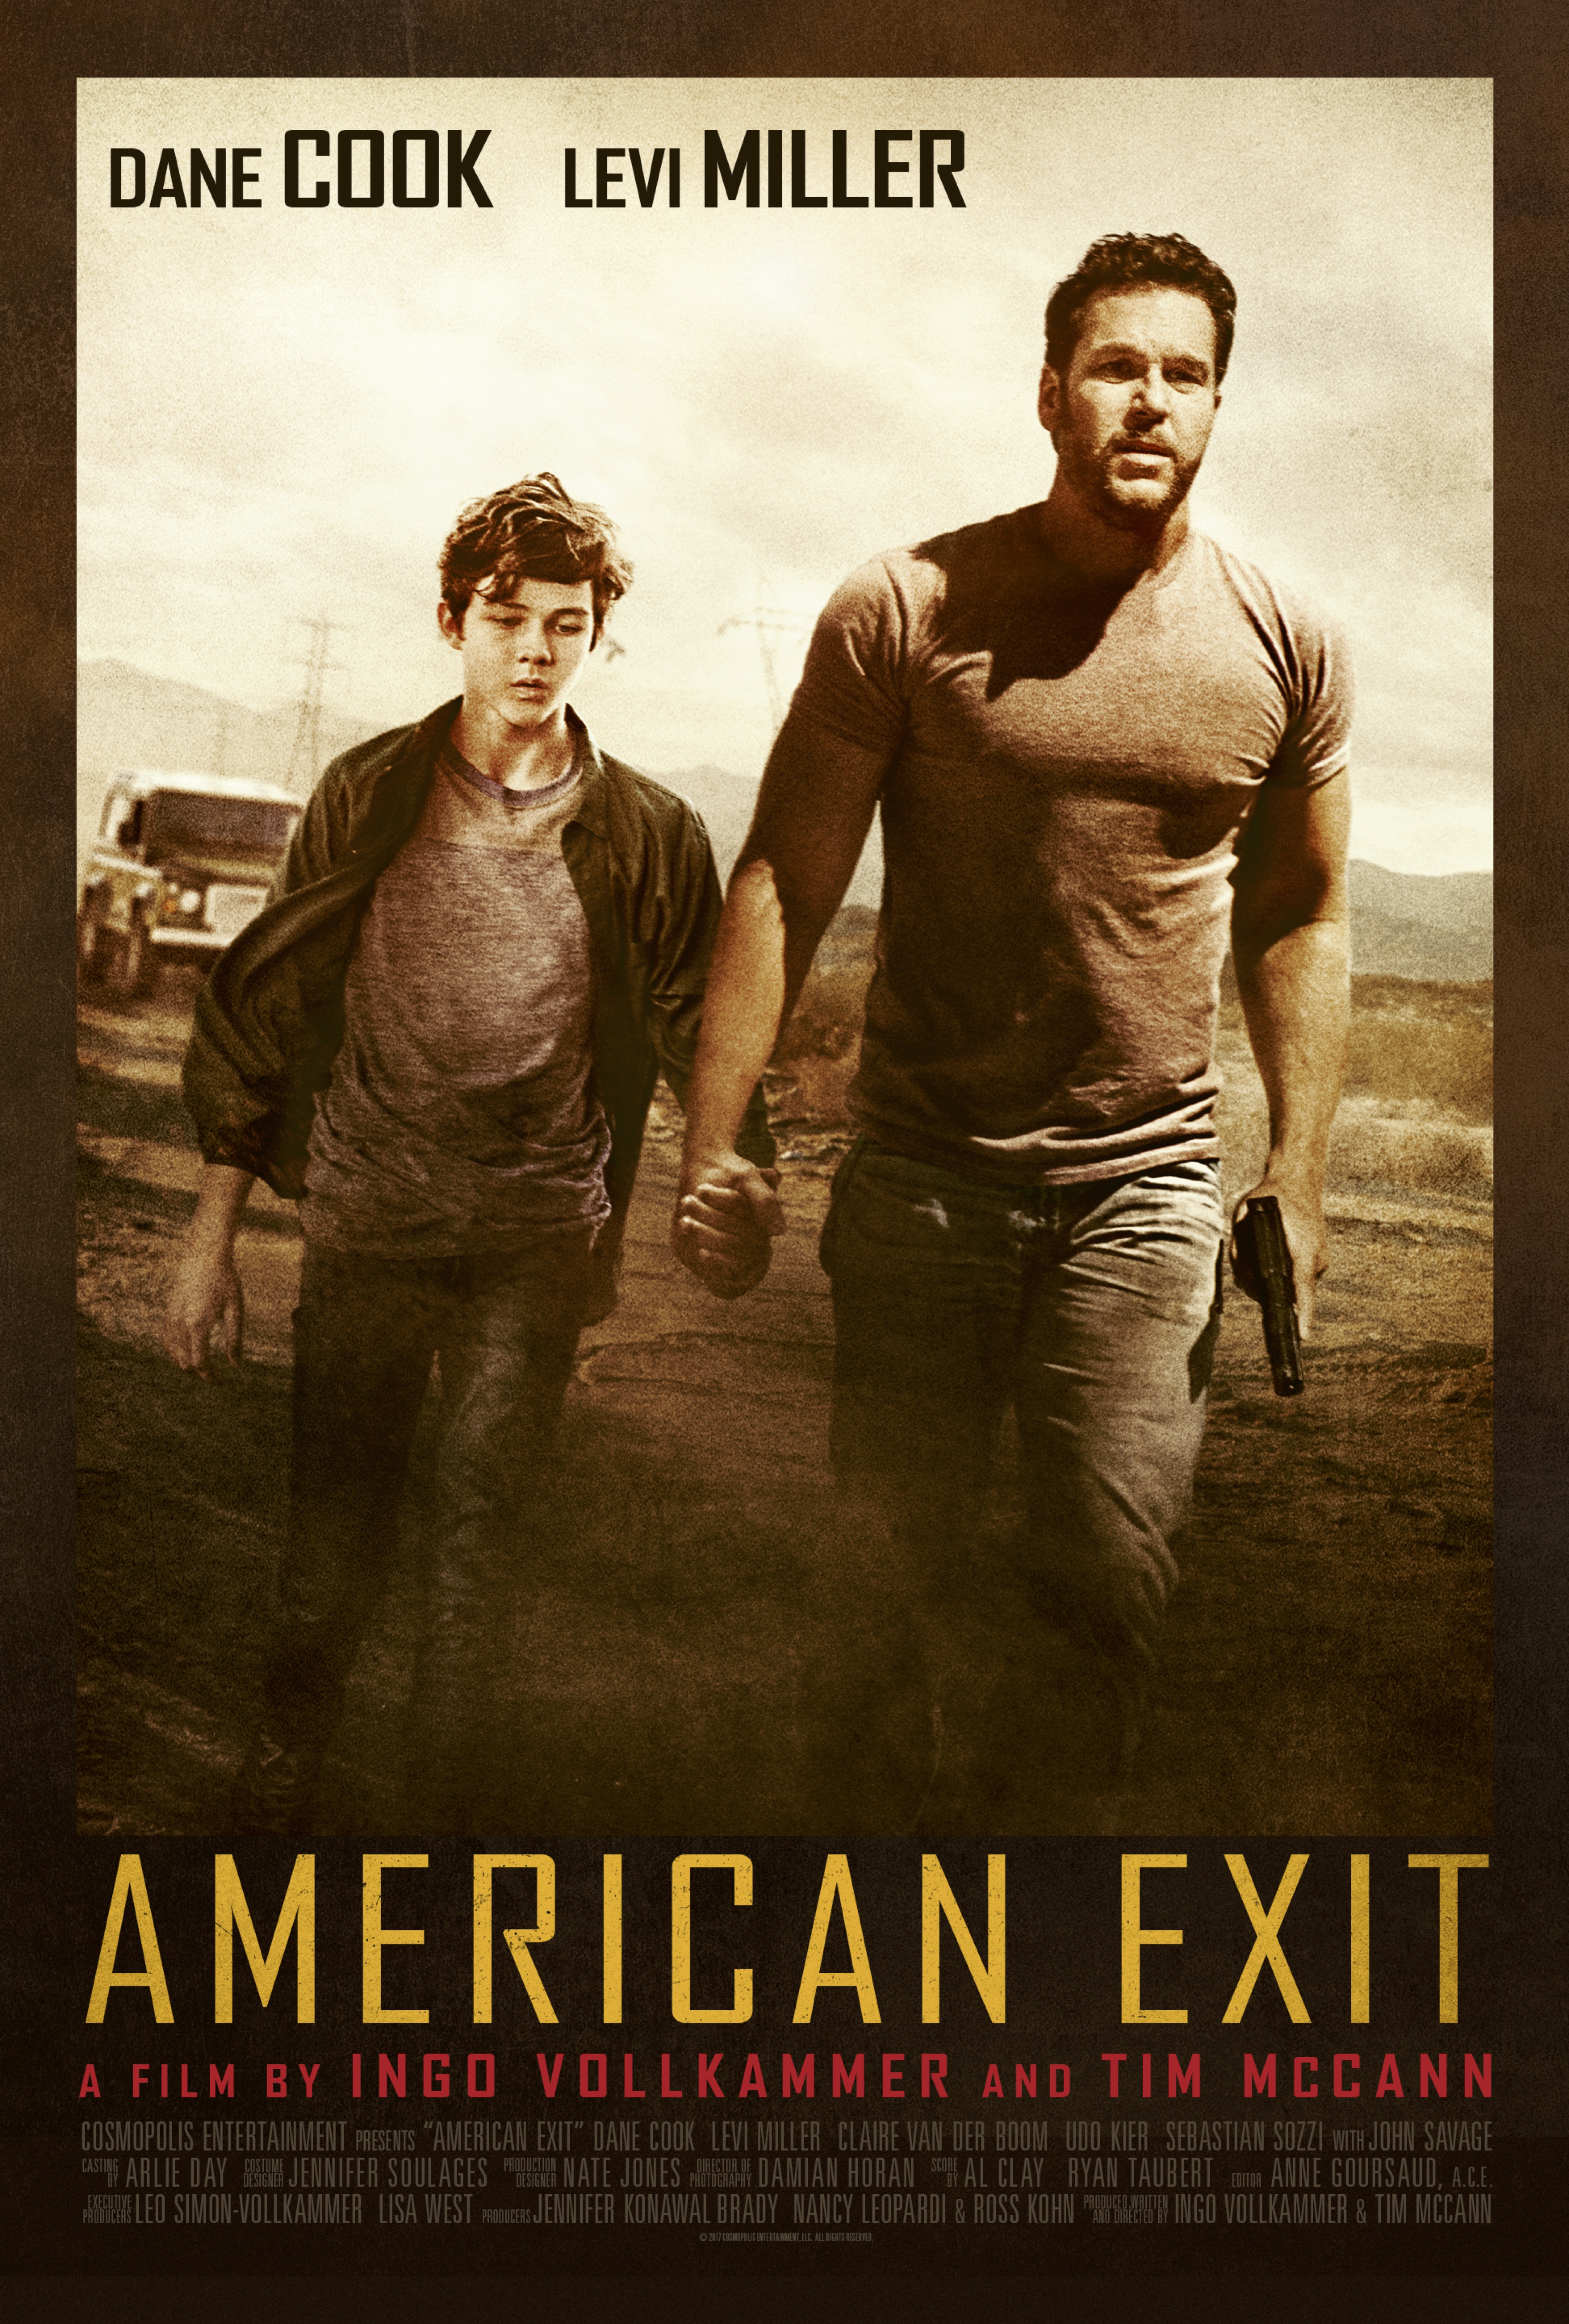 Nonton film American Exit layarkaca21 indoxx1 ganool online streaming terbaru